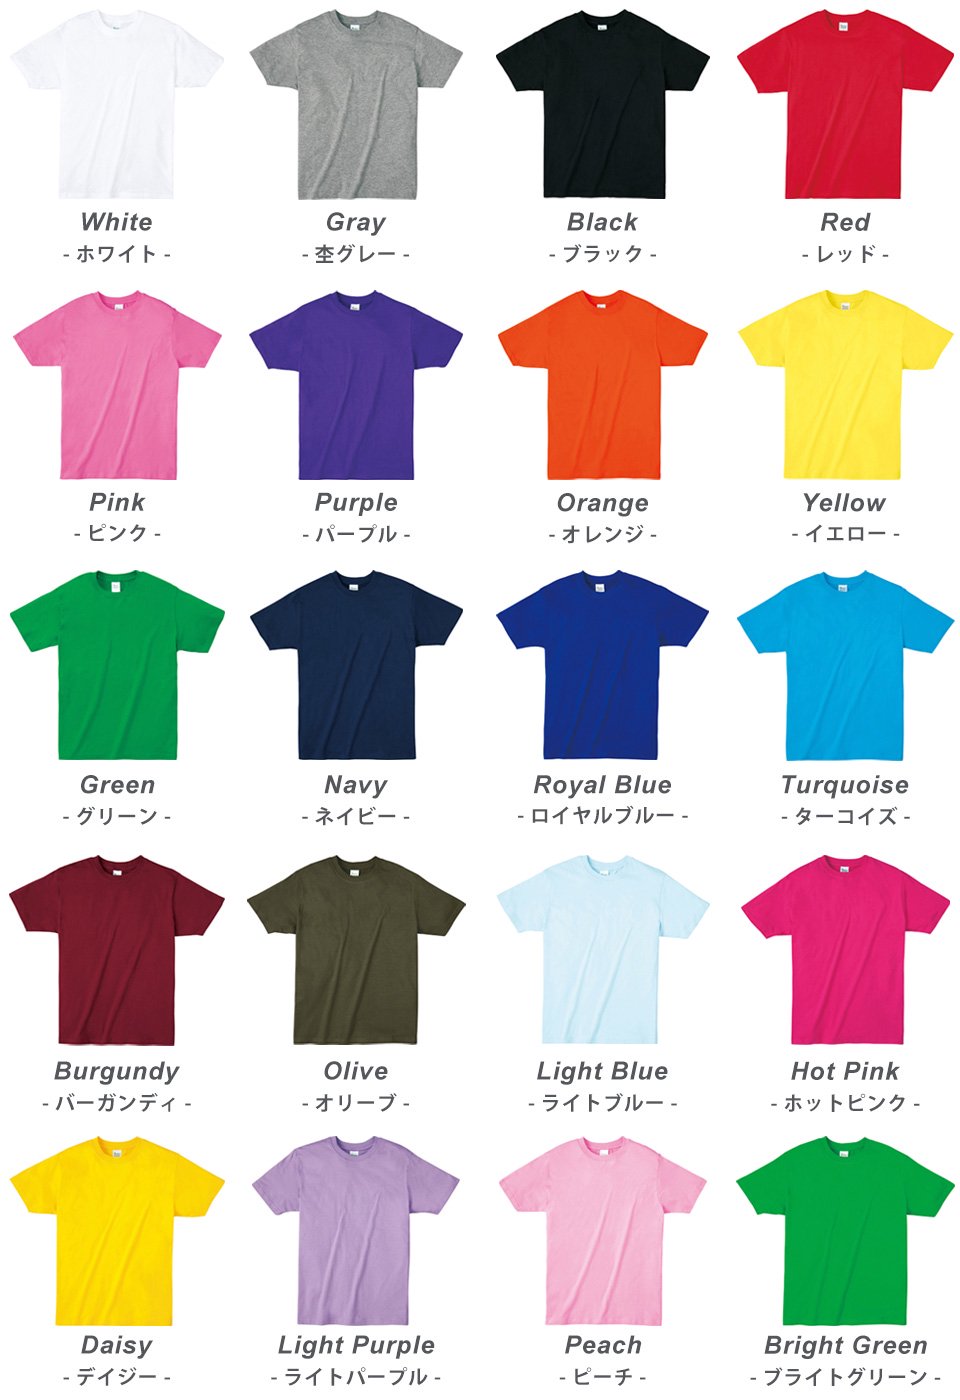 4オンス 薄手の無地tシャツ 38色 低価格 カラフル パーカーやtシャツのお店 Muzistyleplus 公式サイト